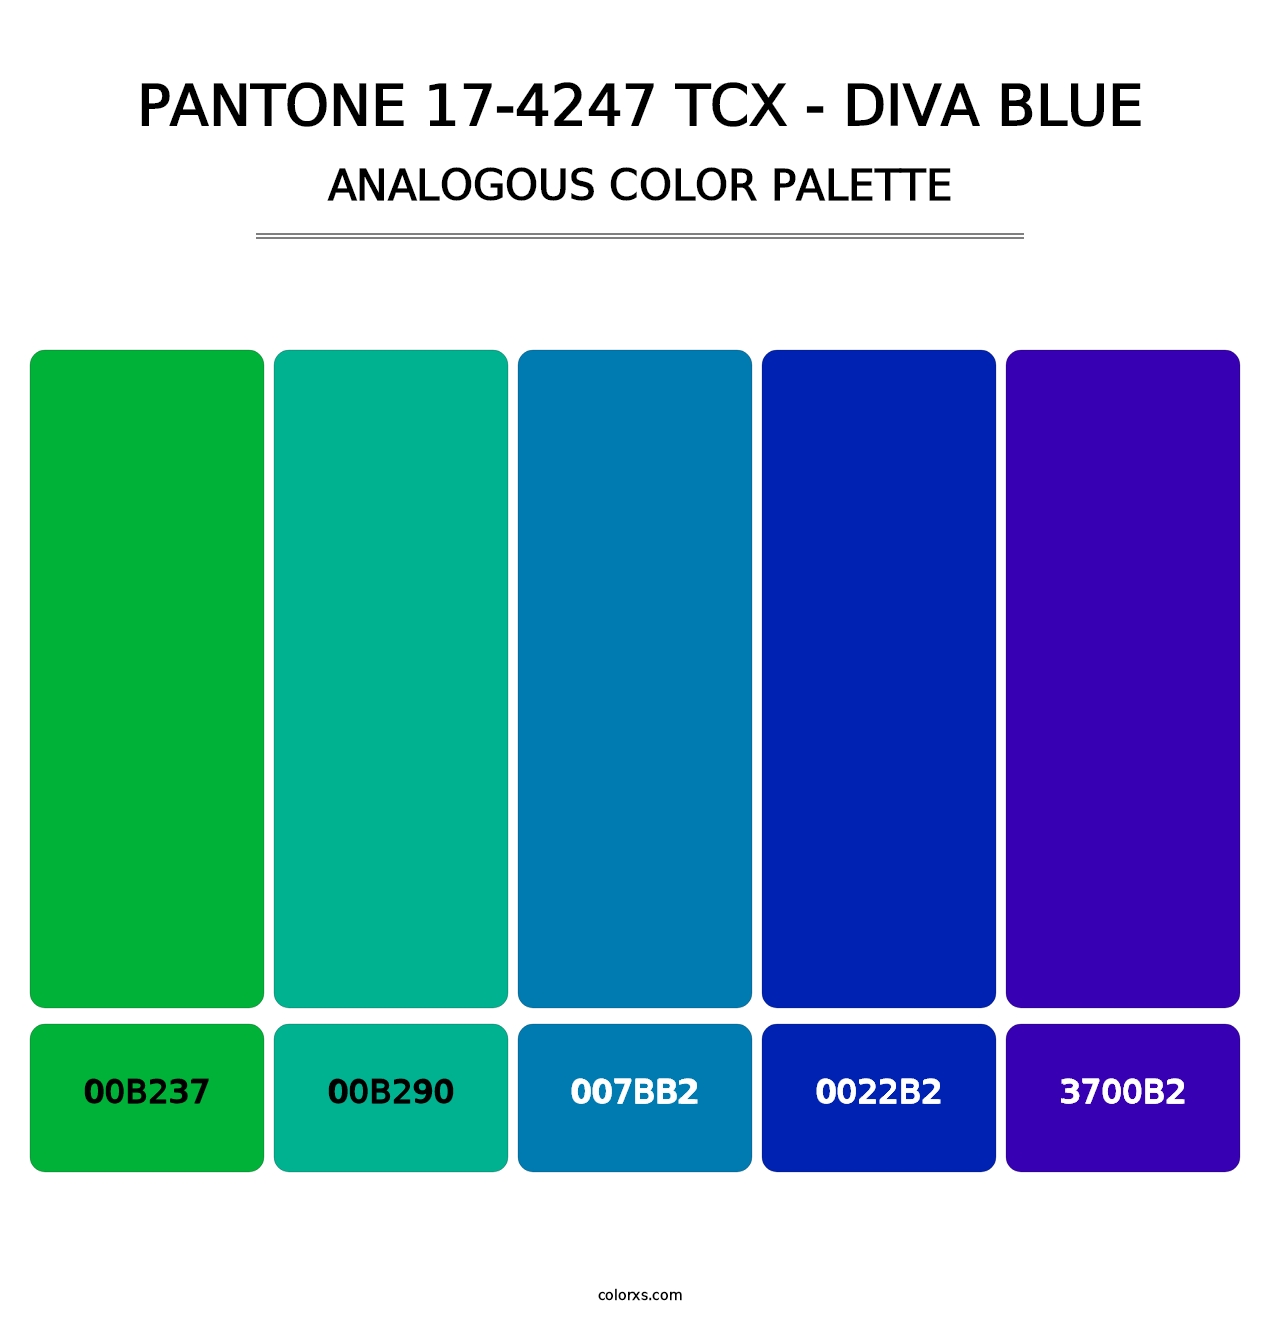 PANTONE 17-4247 TCX - Diva Blue - Analogous Color Palette